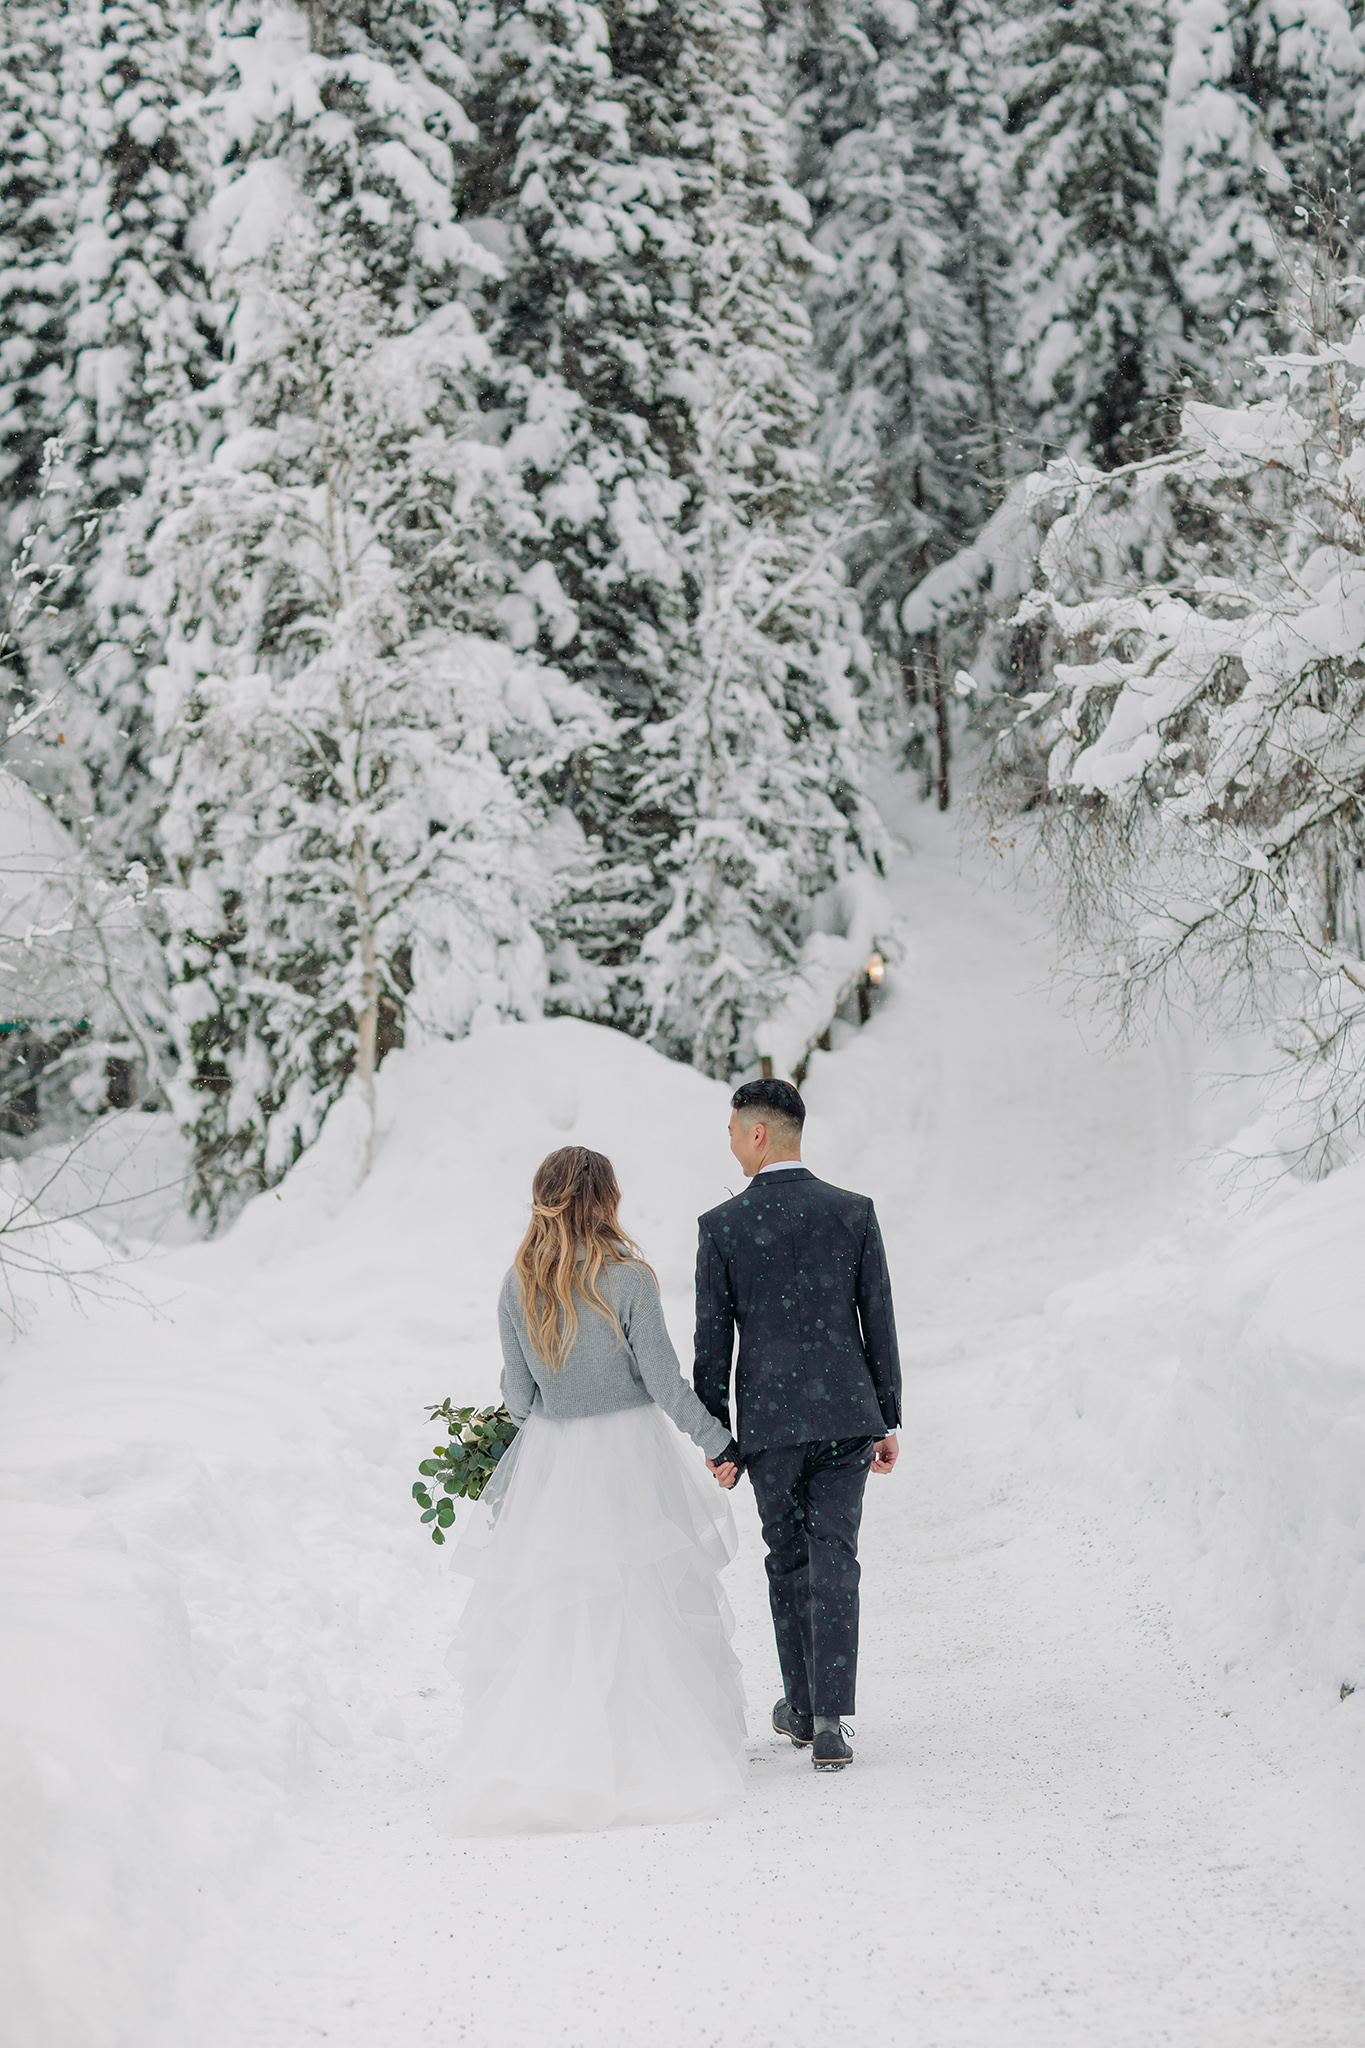 Walking in a winter wonderland at Emerald Lake Lodge mountain wedding